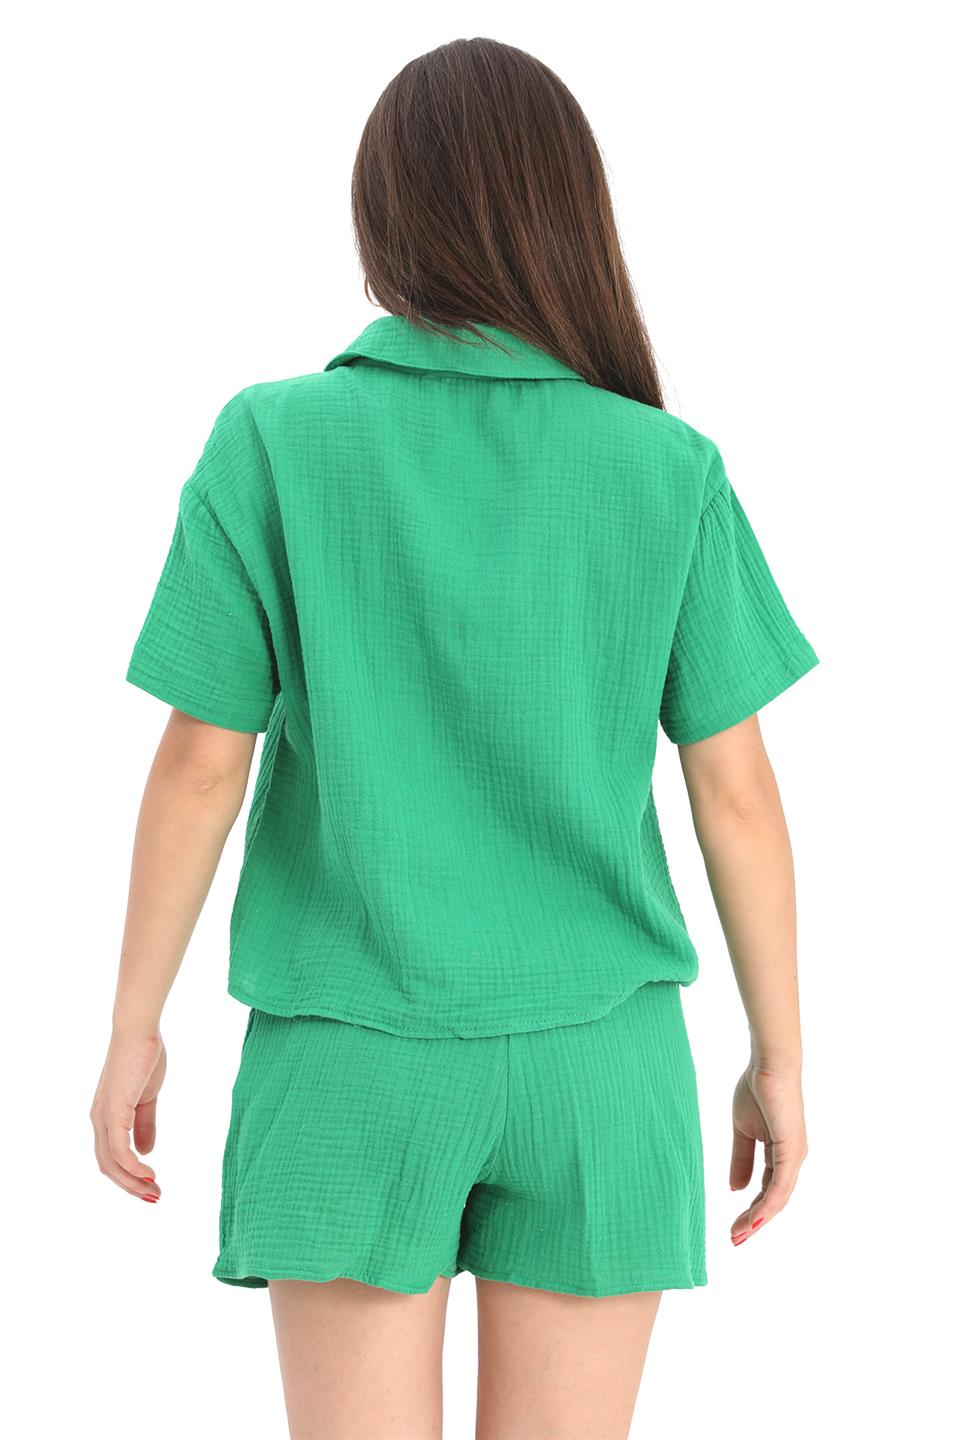 Women's Suit Muslin Shirt Shorts - Green - STREET MODE ™